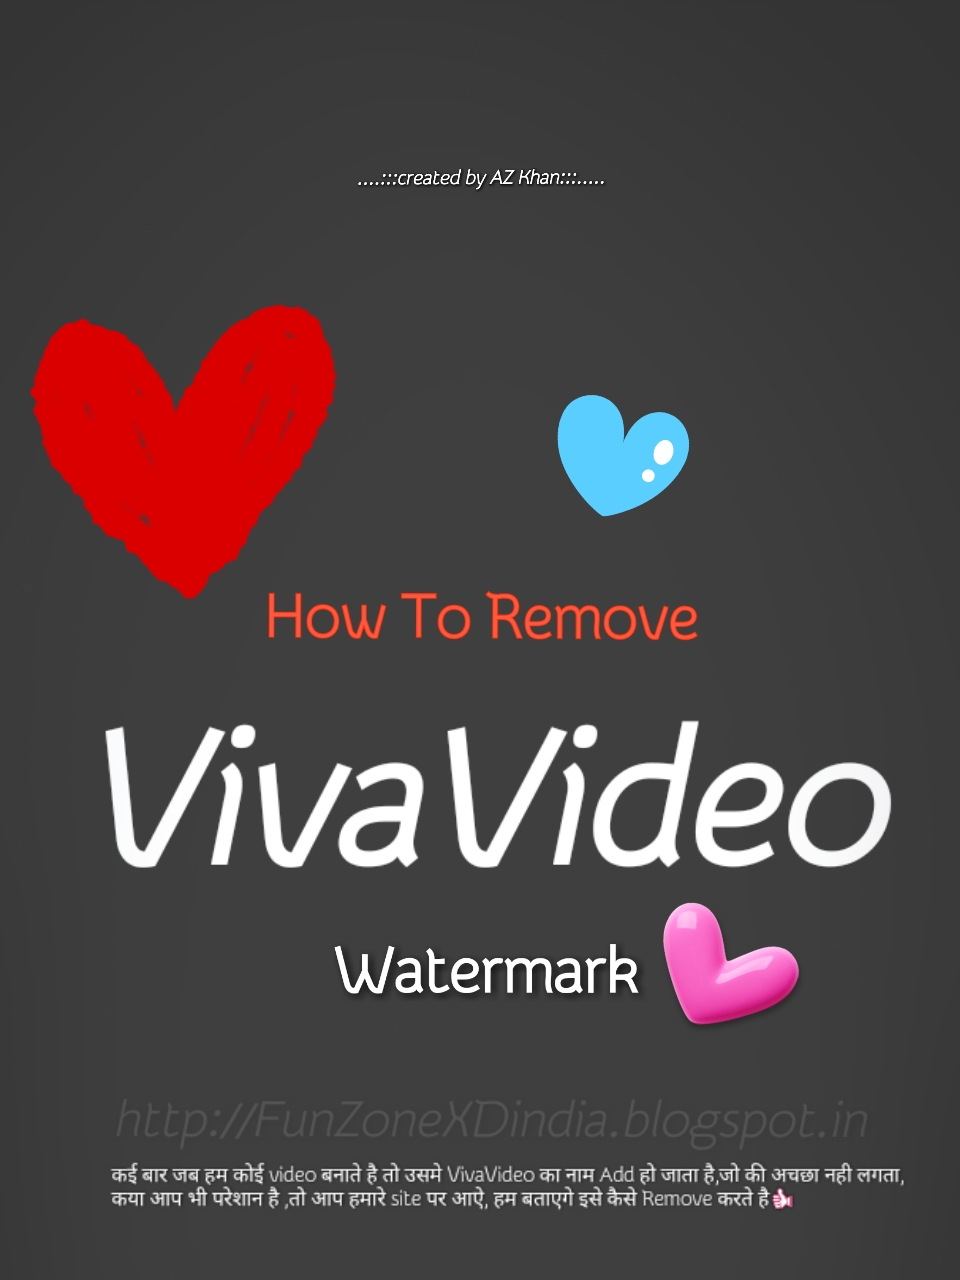 Viva Video Ka Watermark Logo Kese Hide Kare No Root 2017